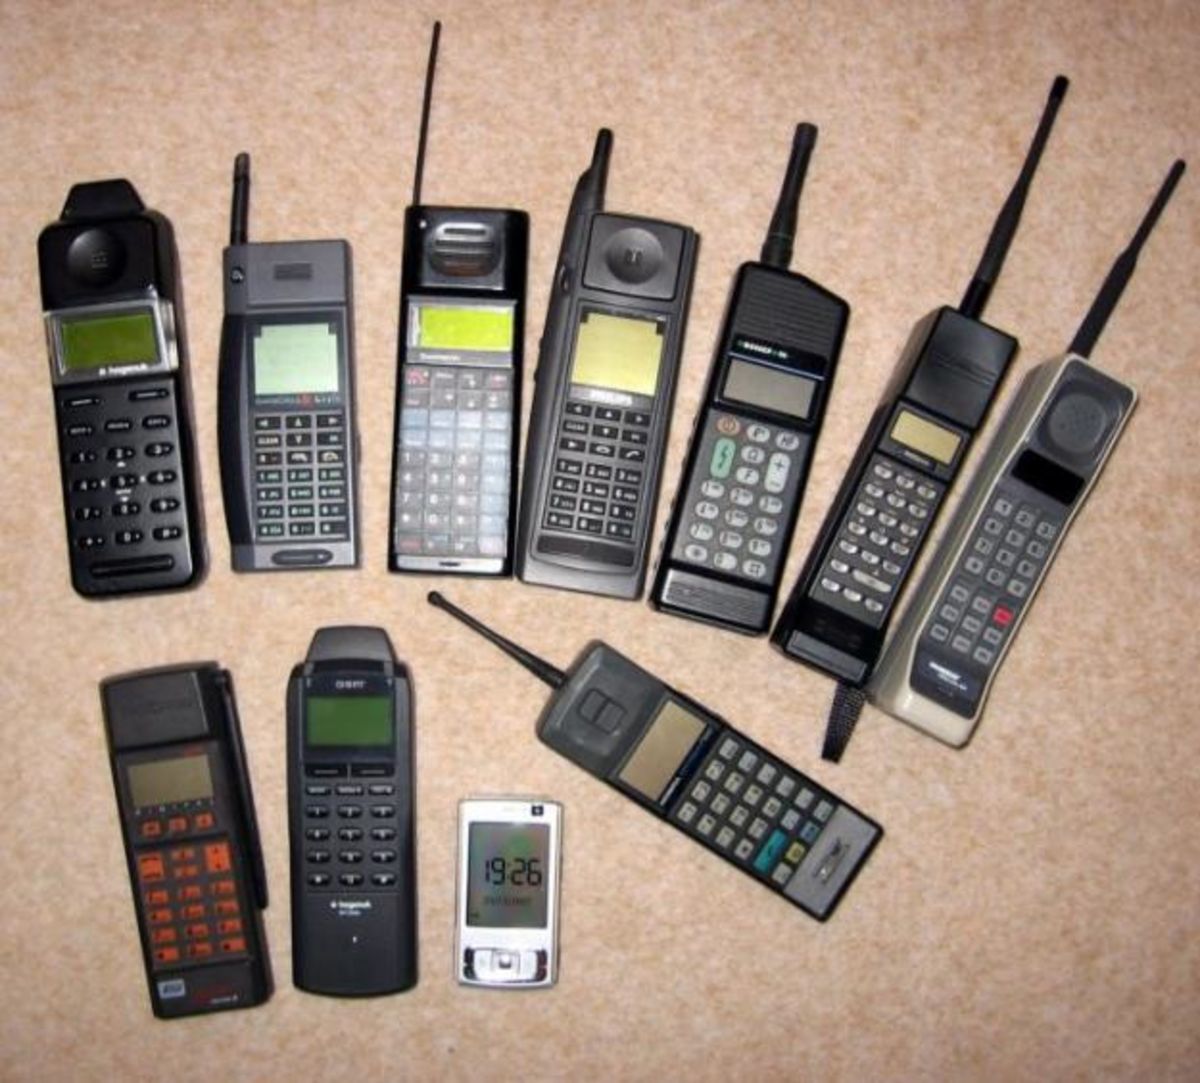 Мобильные телефоны 90. Радиотелефон сони в 90 х. Радиотелефон 90 х нокиа. Мобильники Сименс 90-х. Nokia Mobira md59–nb2 (1991 год).